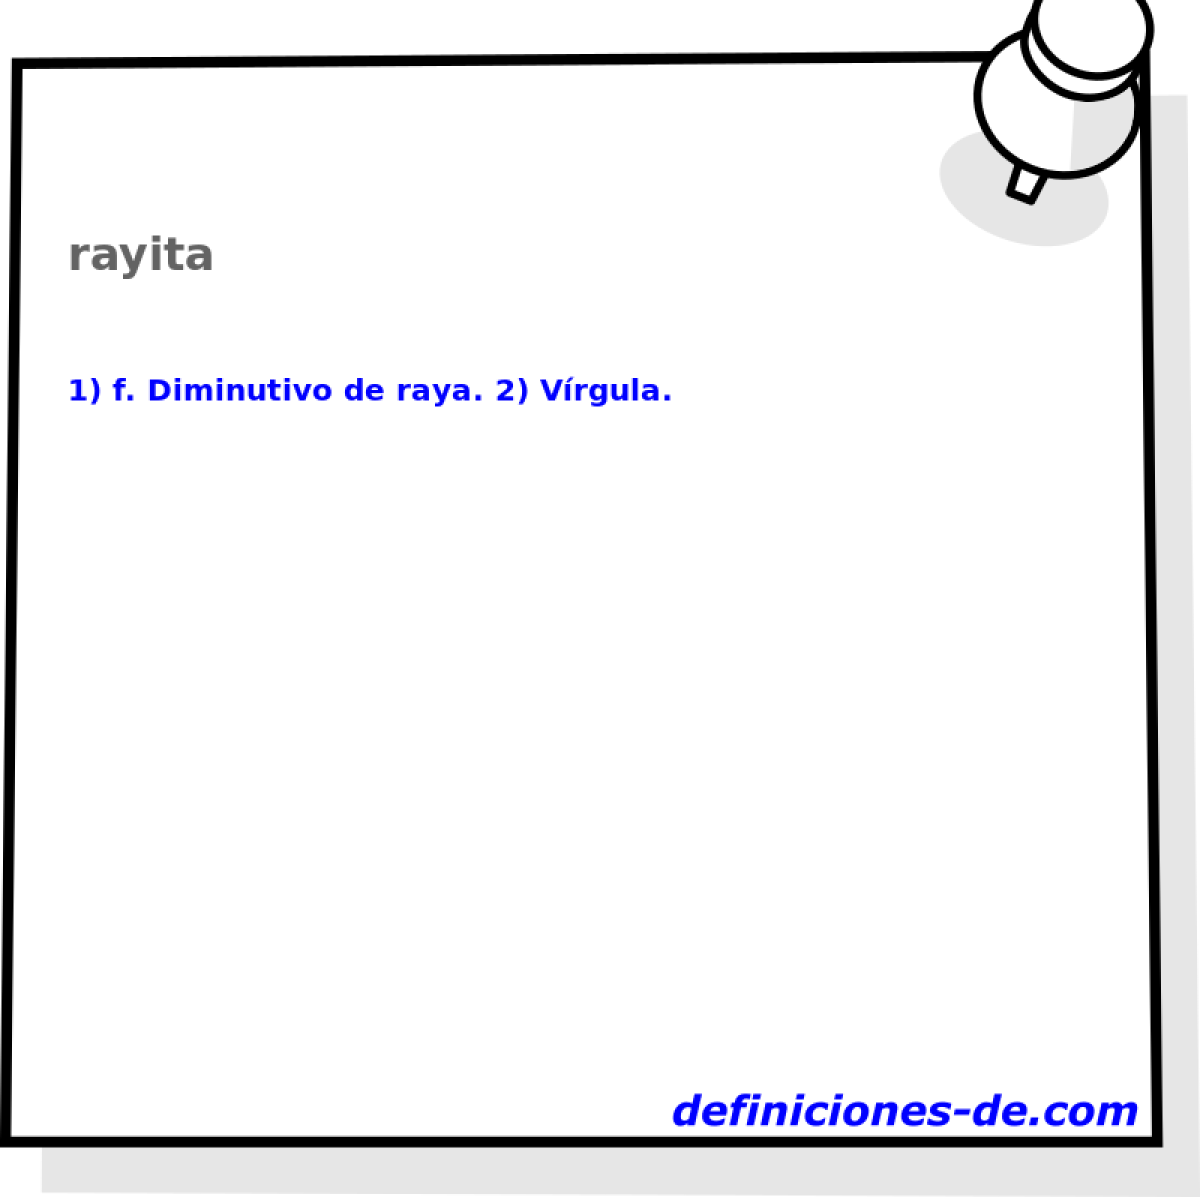 rayita 